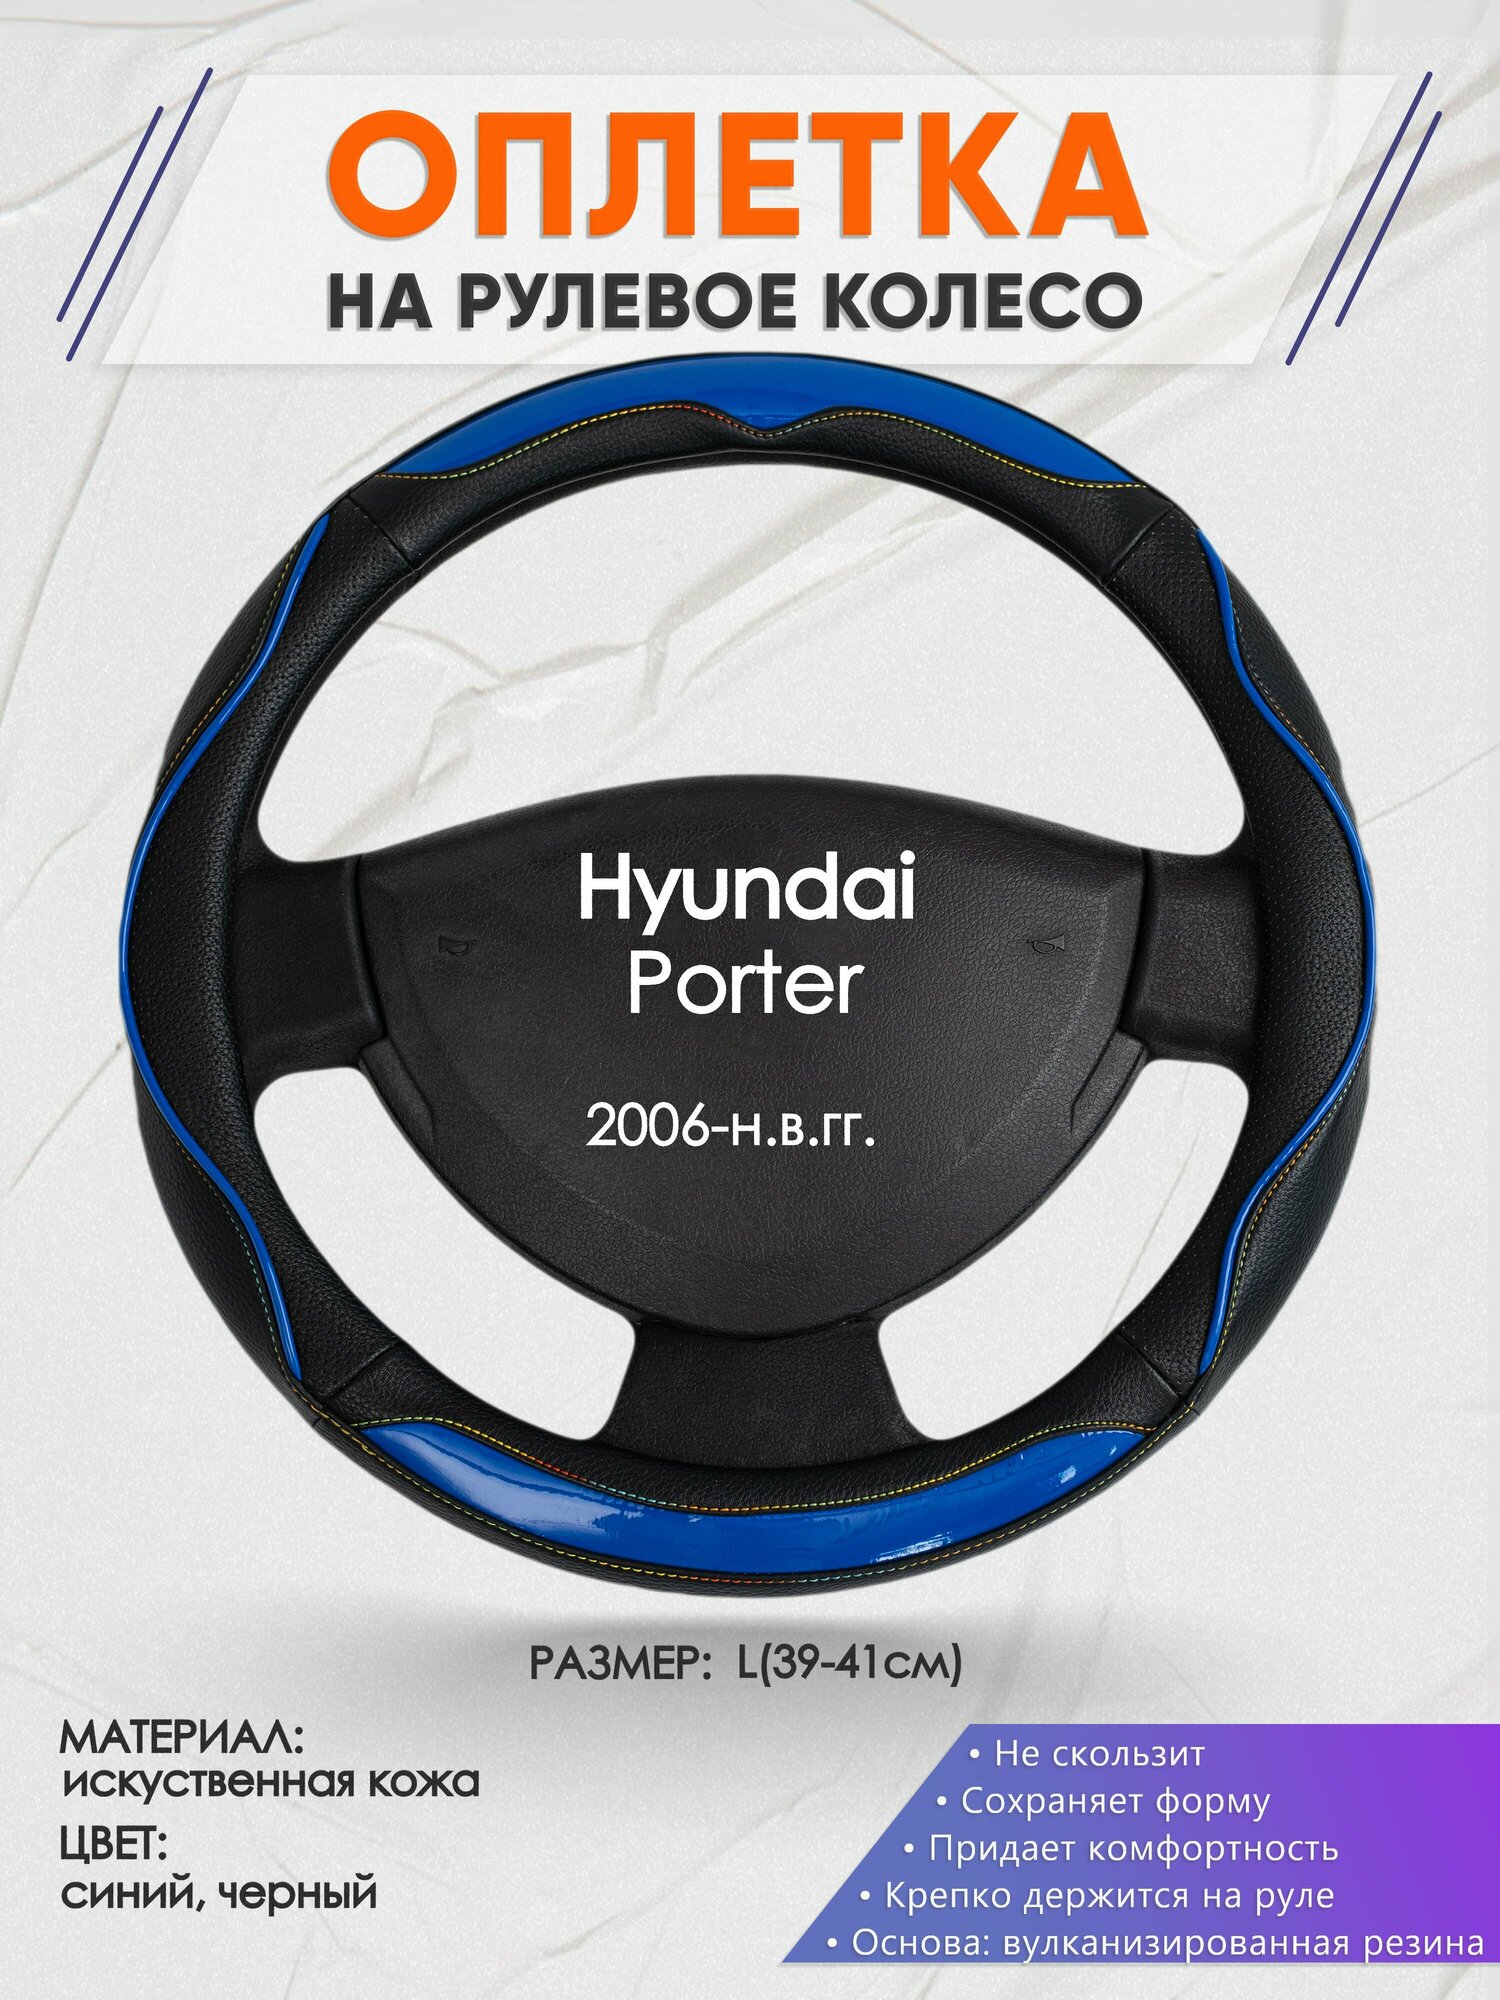 Оплетка на руль для Hyundai Porter(Хендай Портер) 2006-н. в, L(39-41см), Искусственная кожа 11